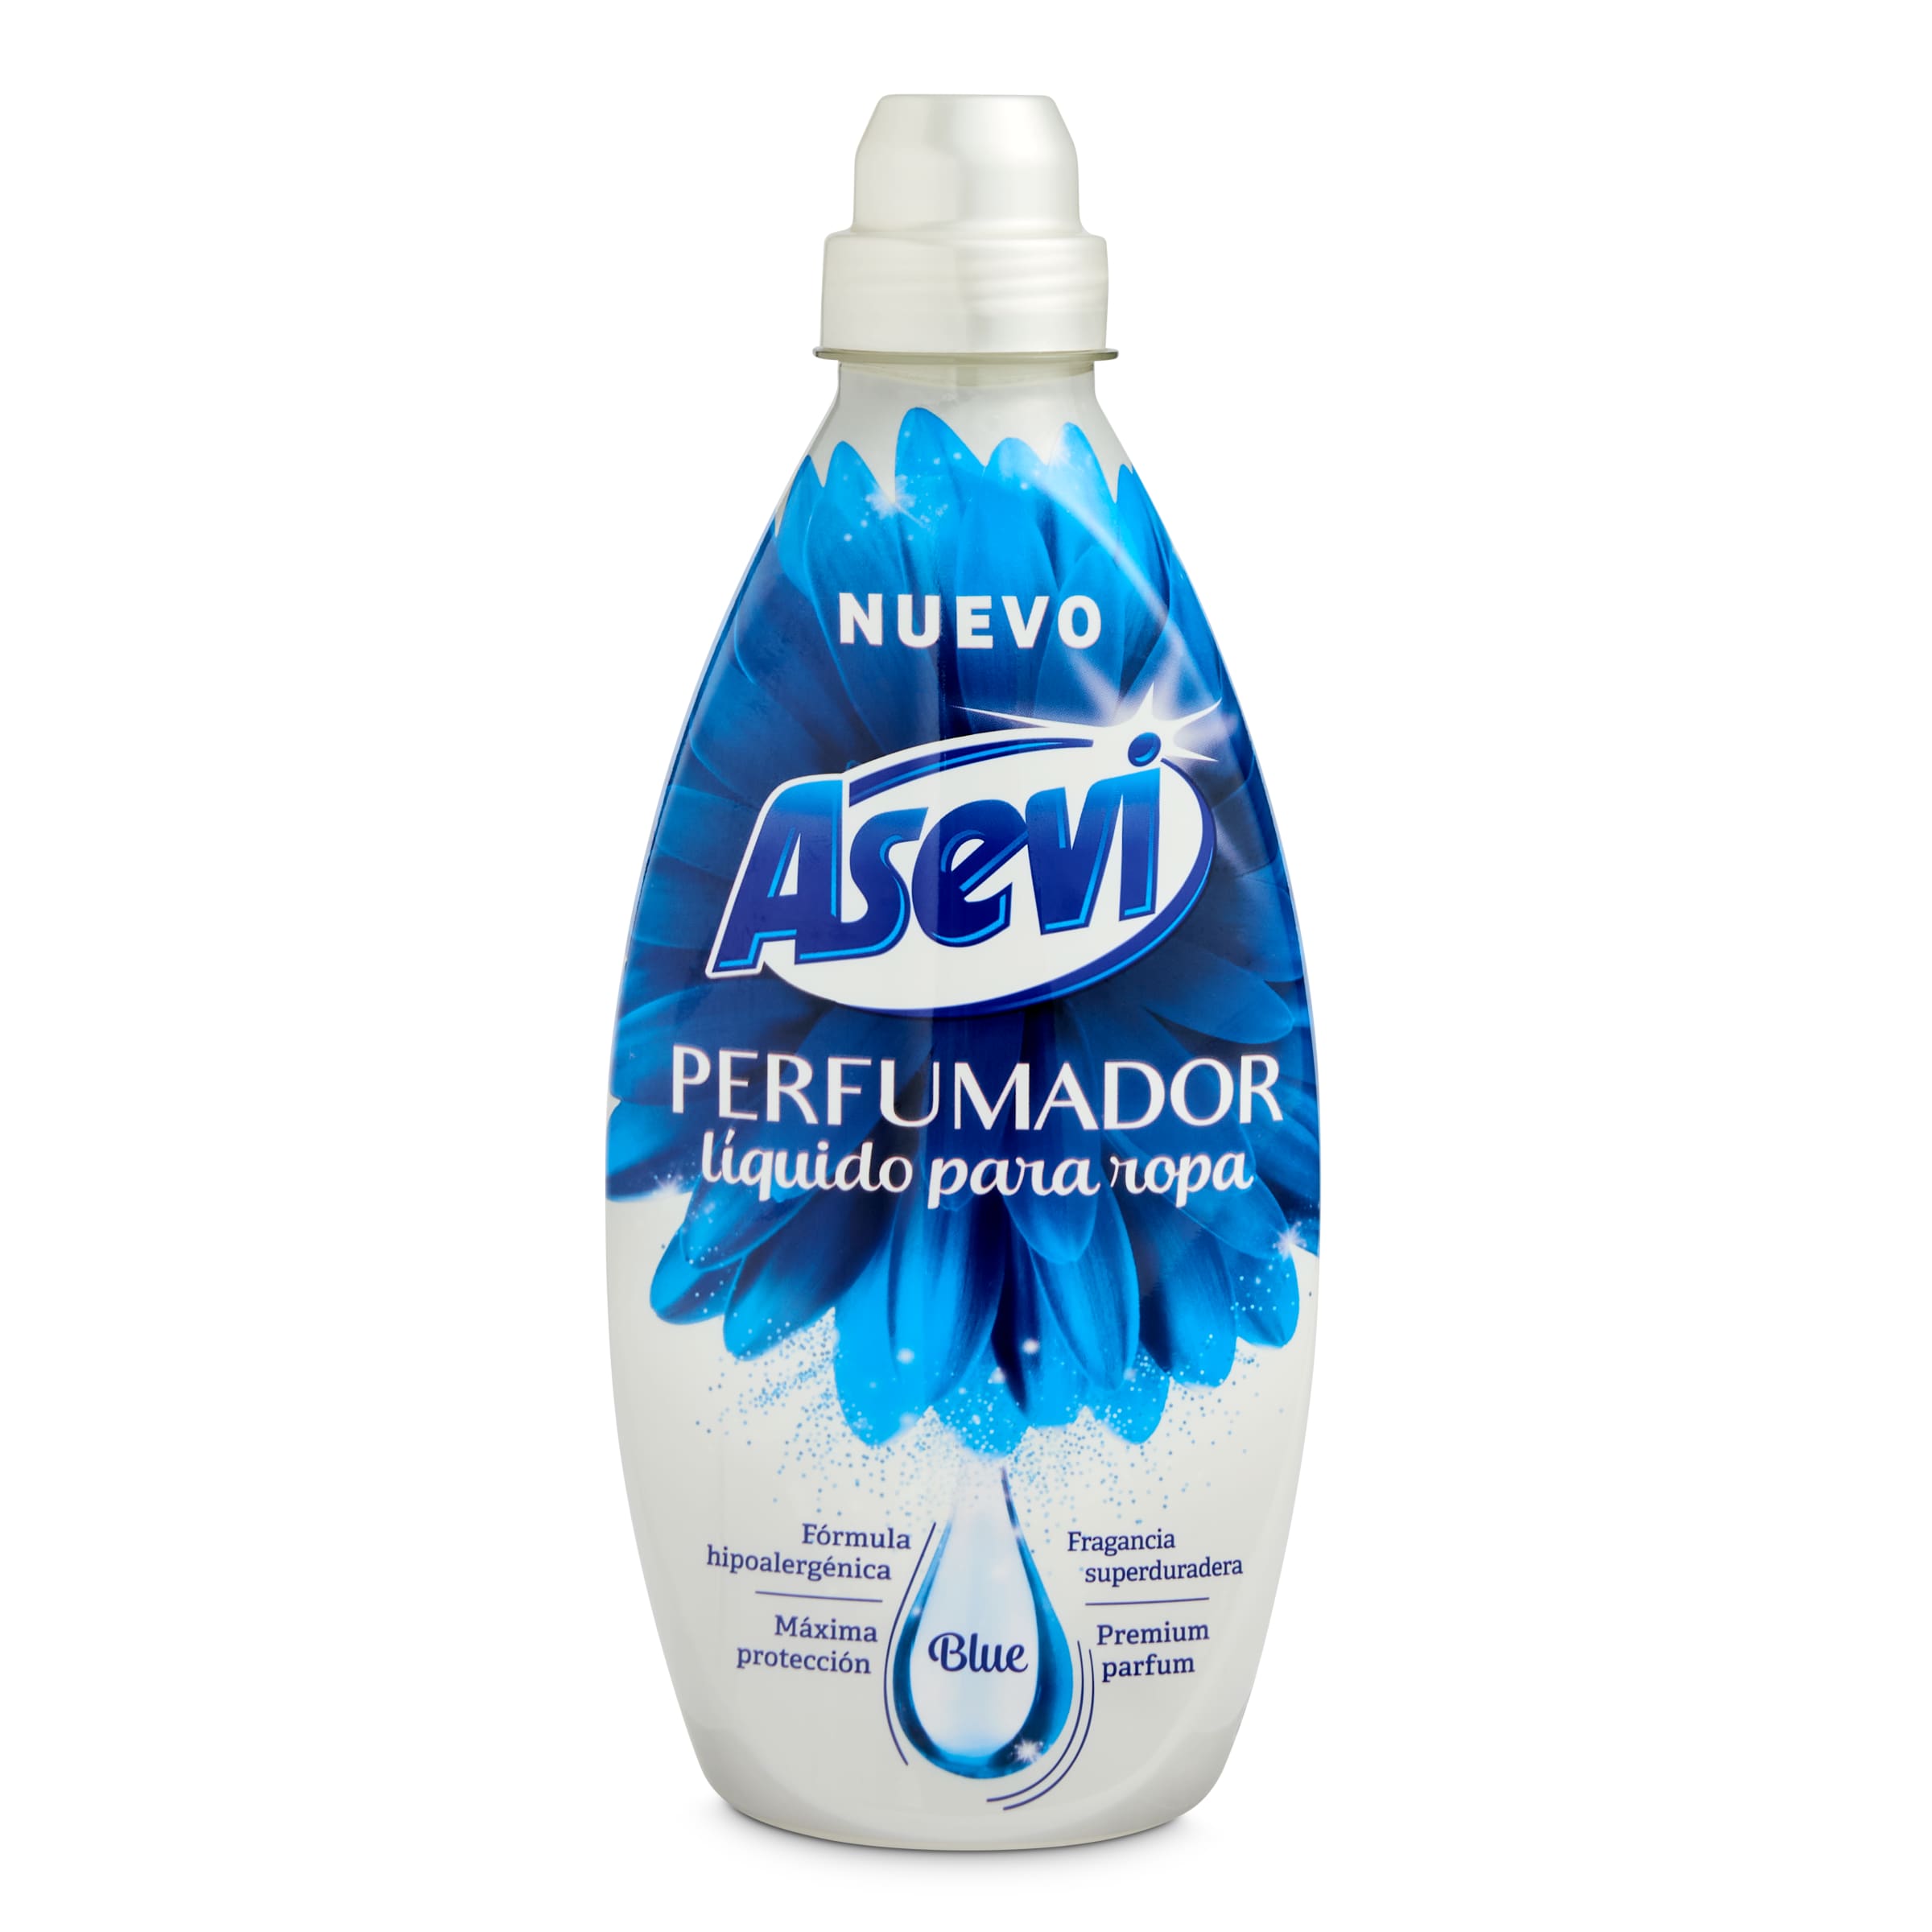 Suavizante perfumador azul Flor botella 36 lavados - Supermercados DIA